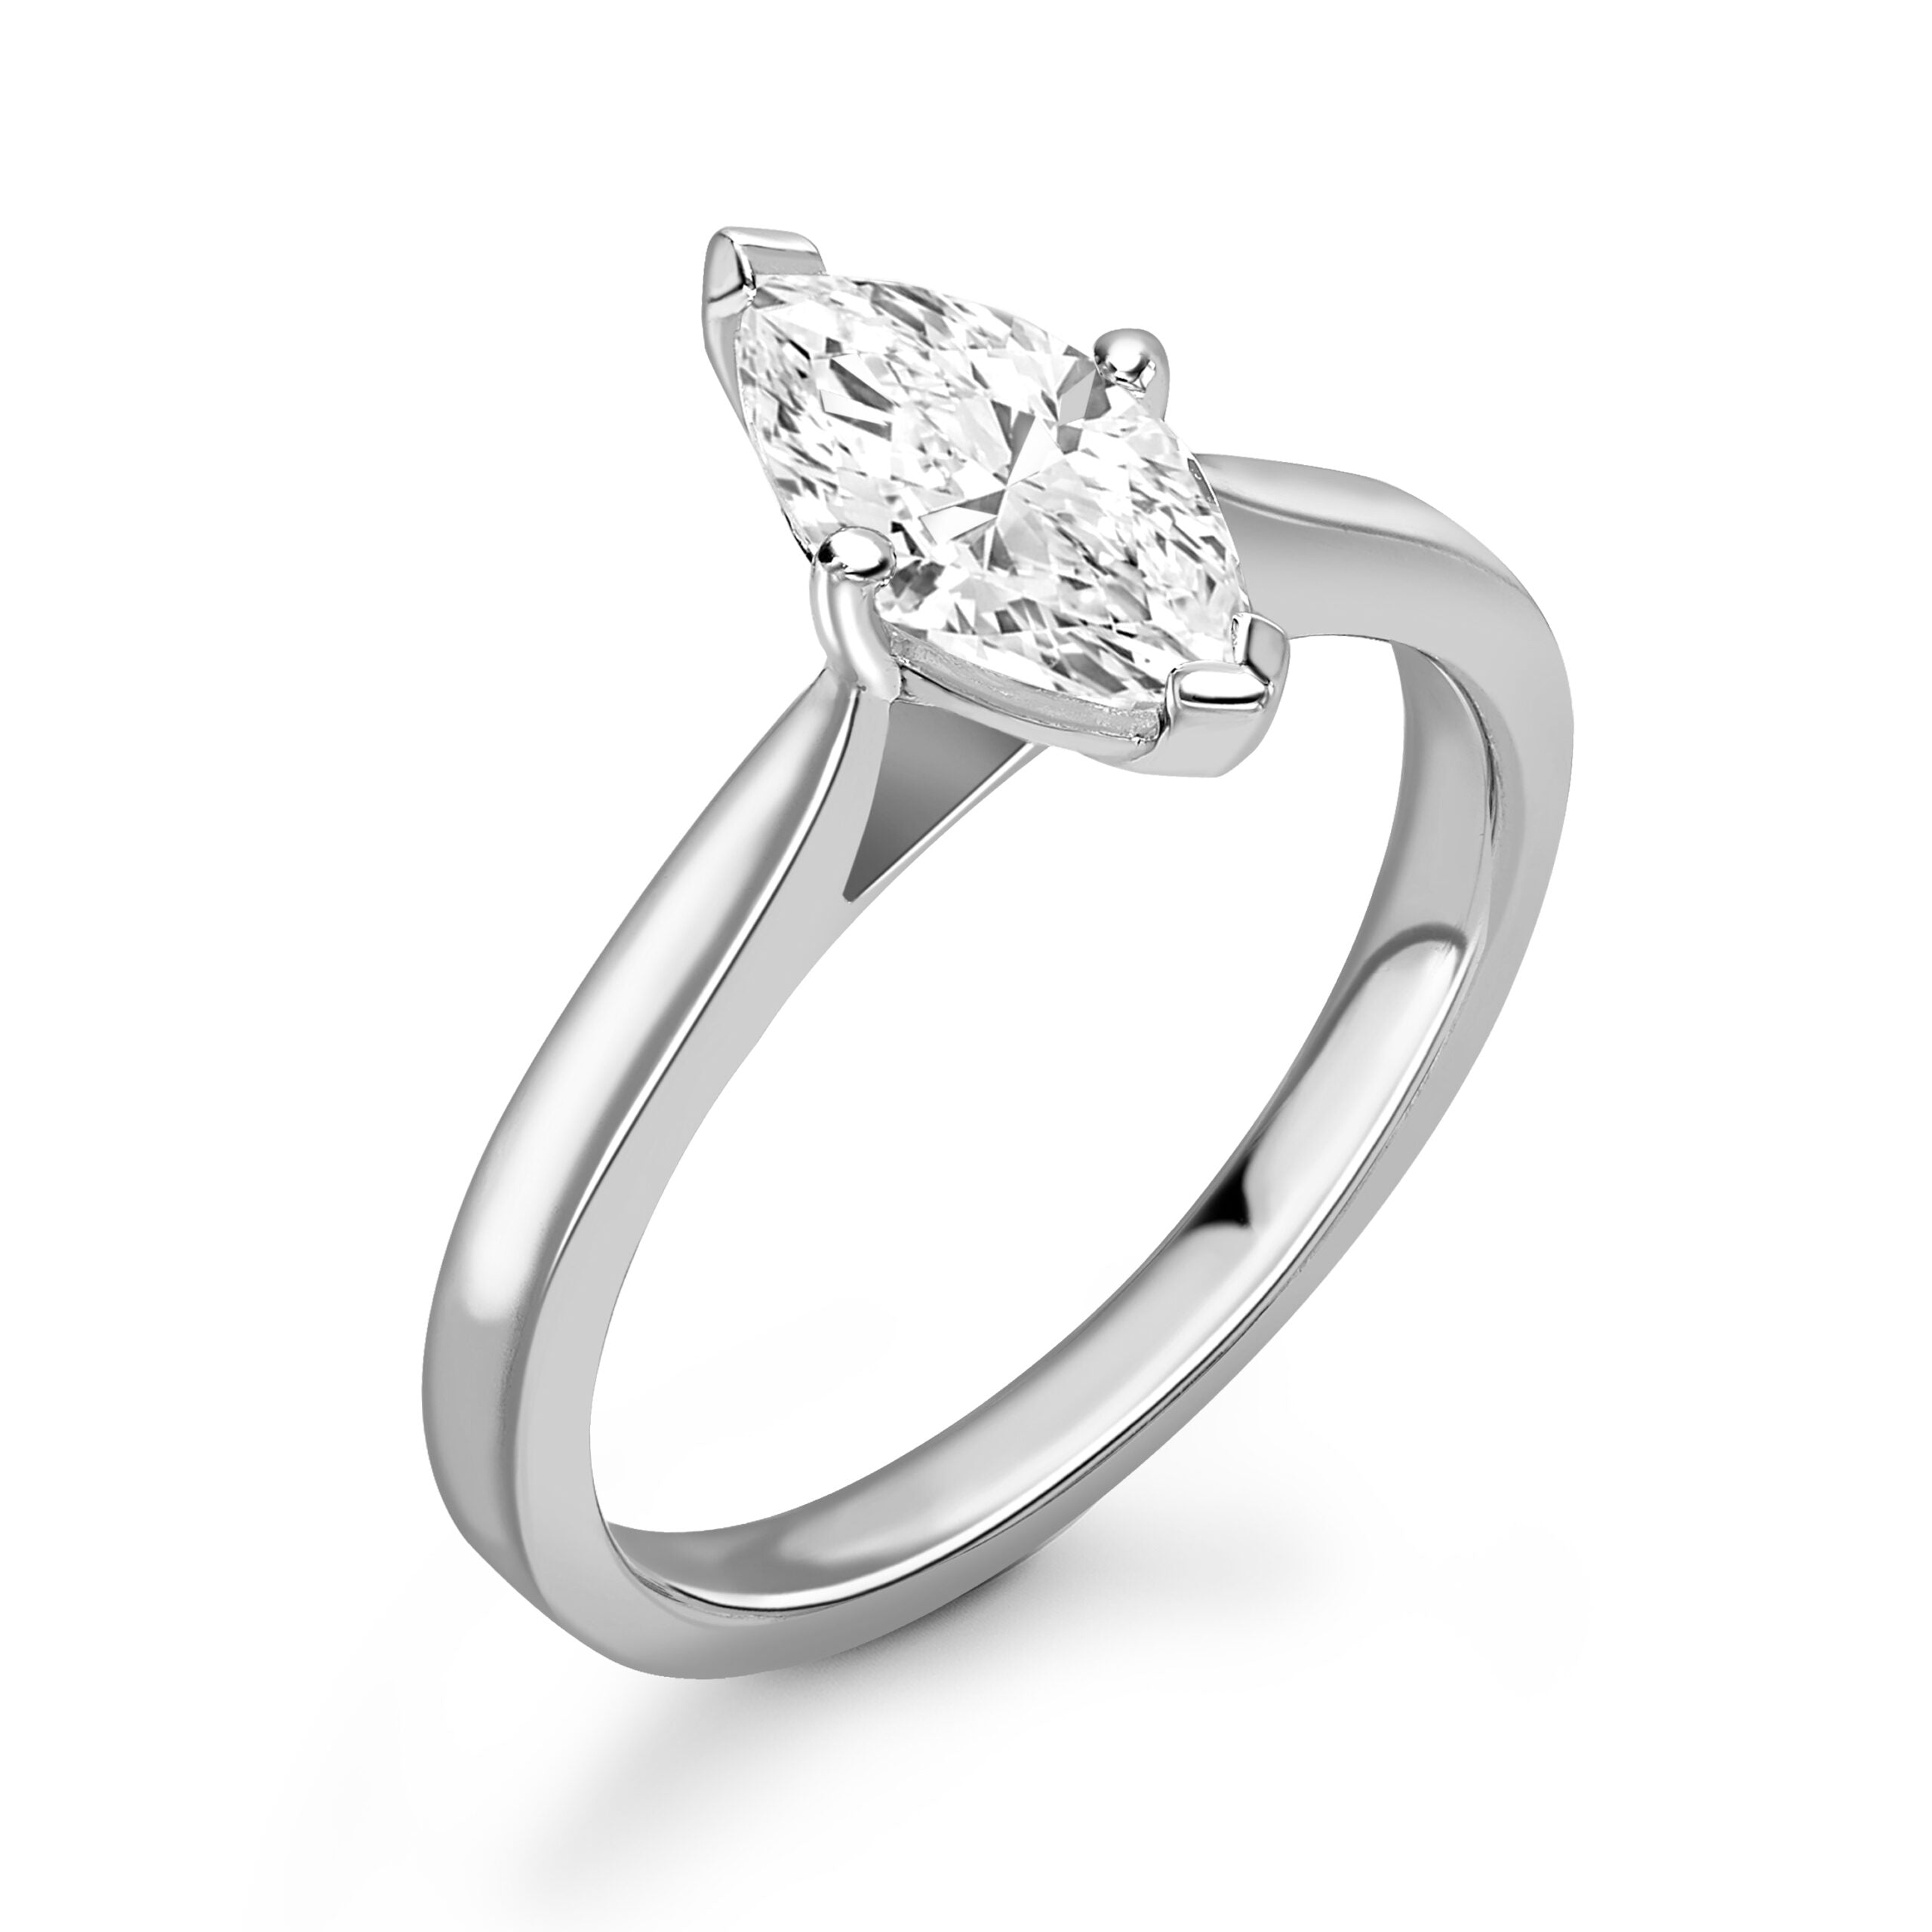 Marquise Solitaire Diamond ring in Platinum